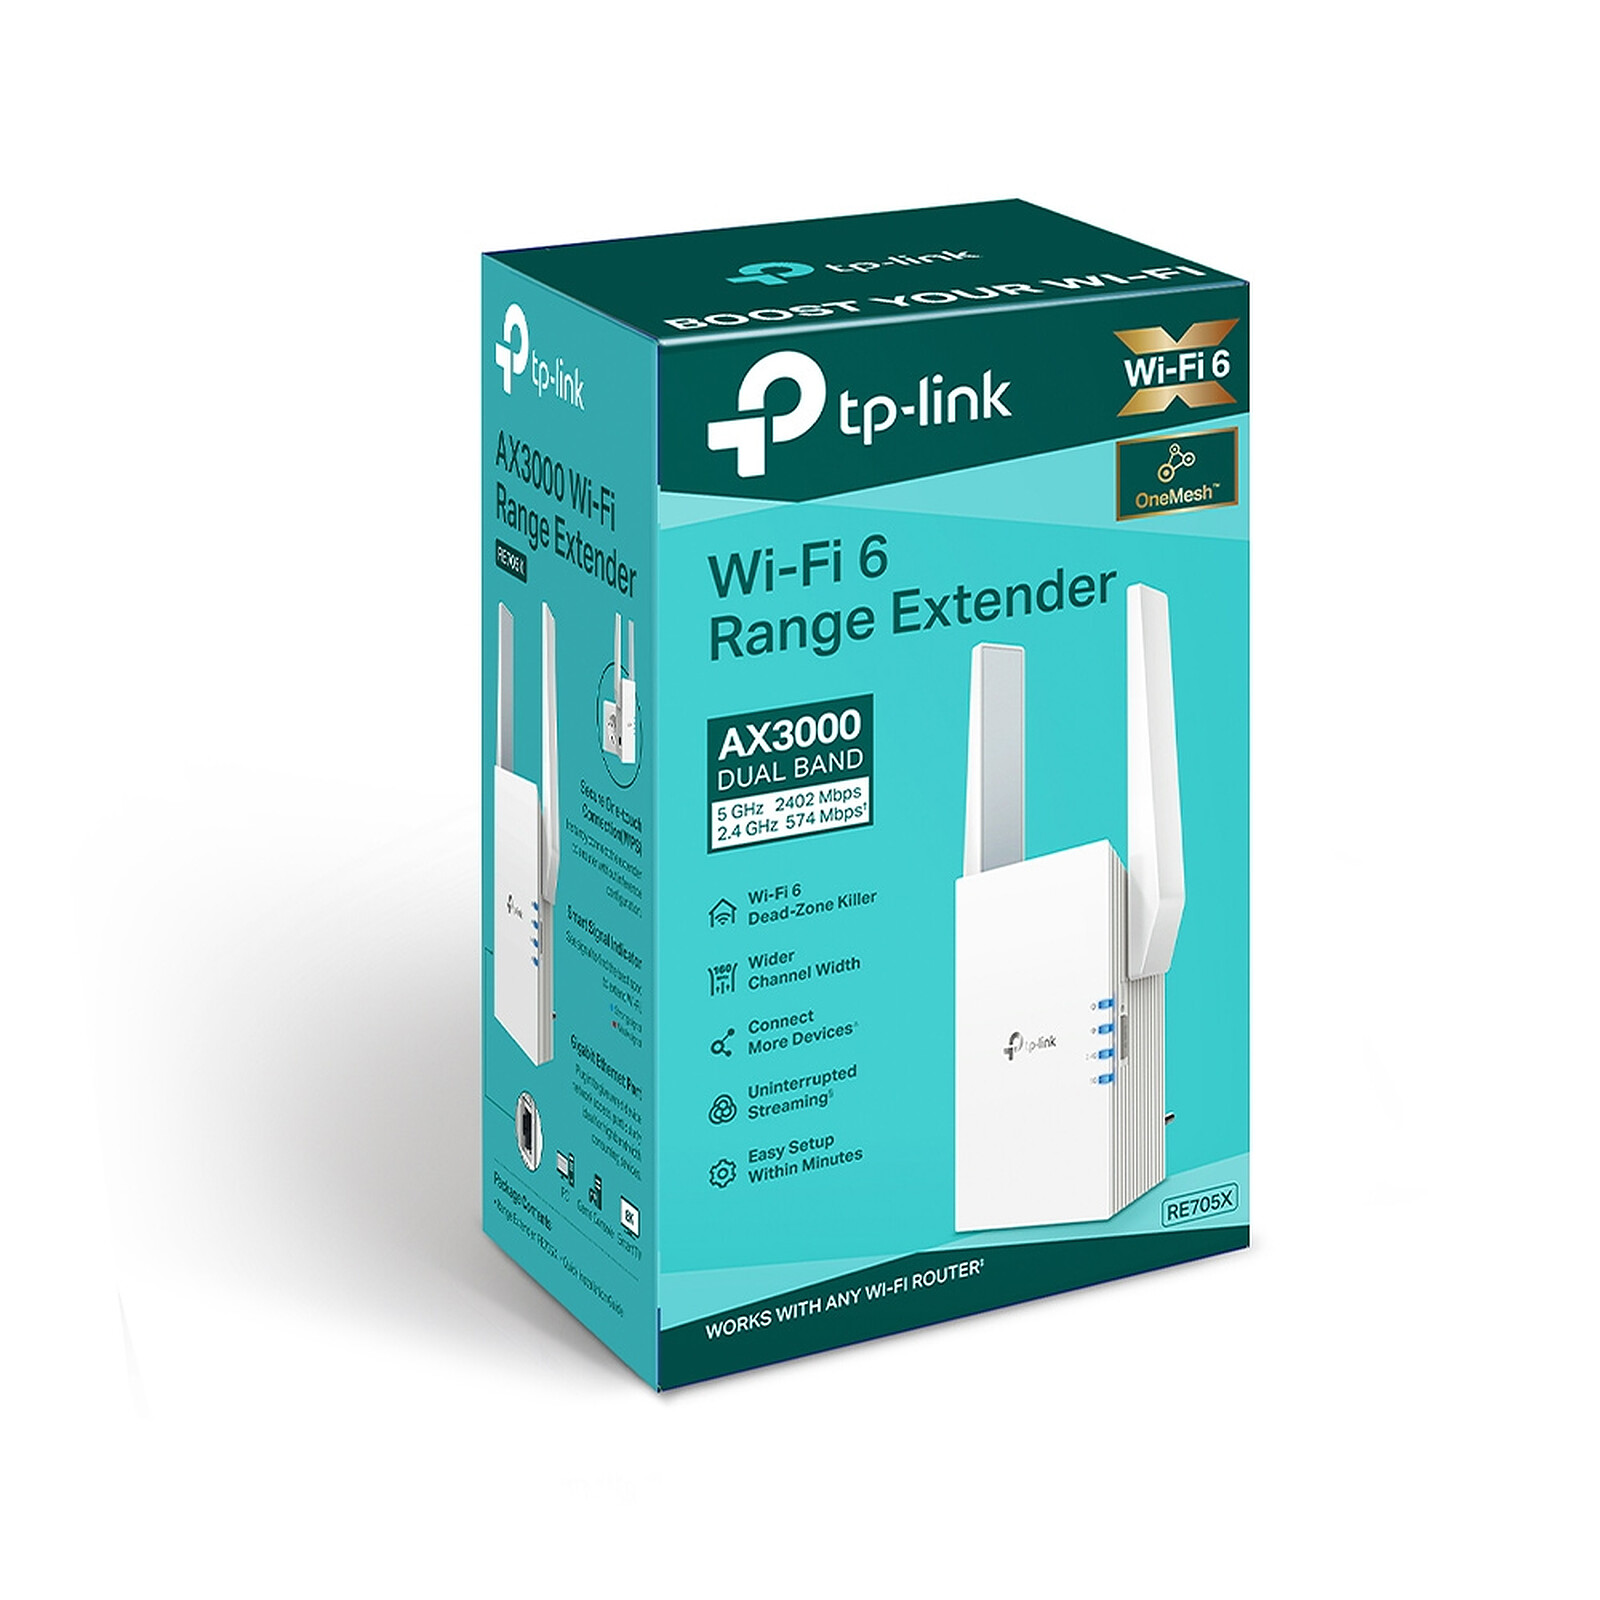 TP-LINK RE705X - Répéteur Wi-Fi - LDLC